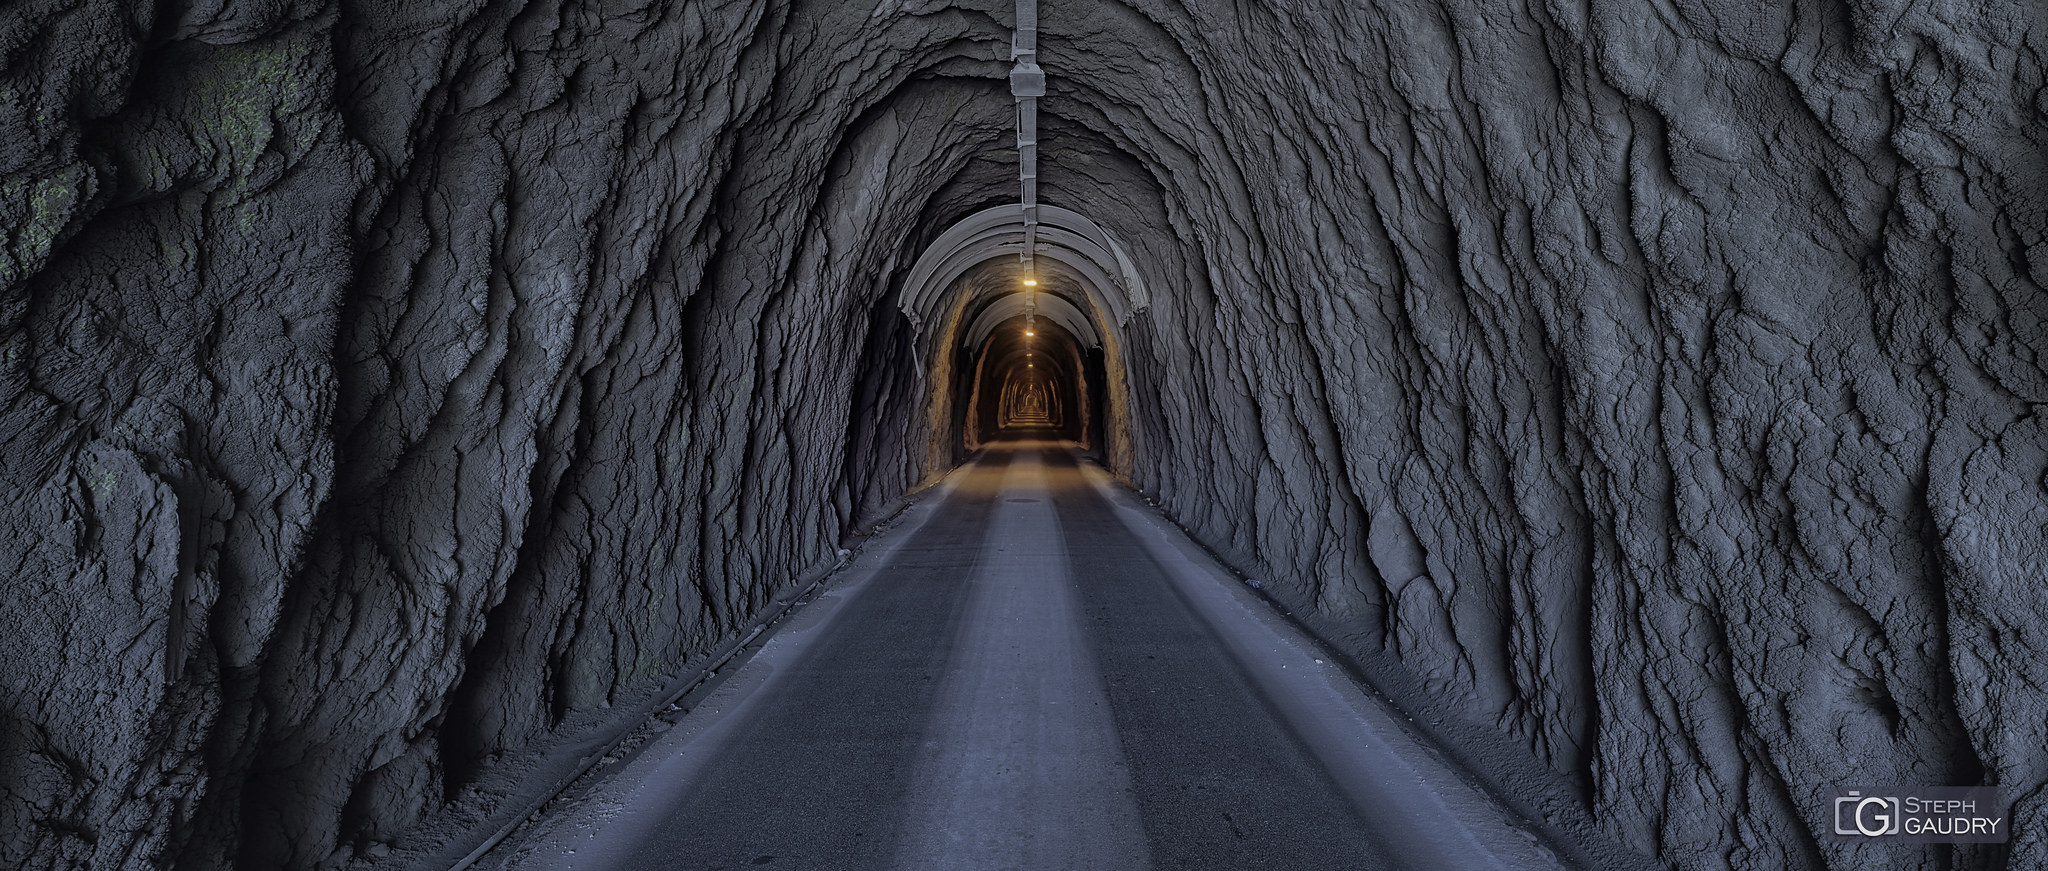 Italie / I tunnel della Colonnata discesa verso Carrara